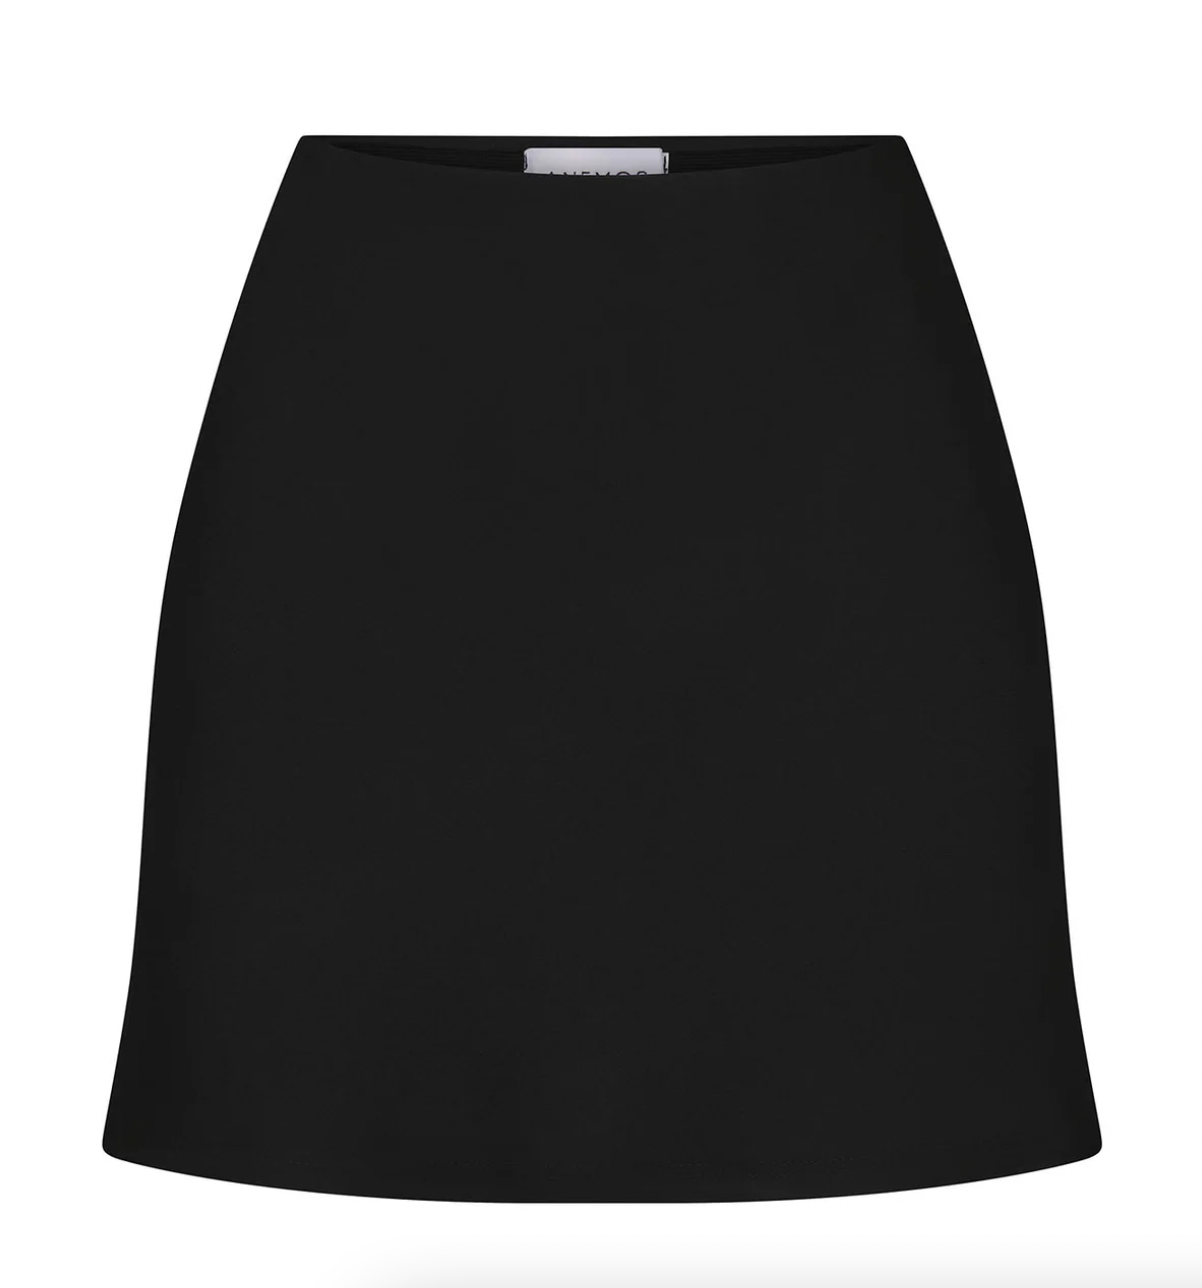 Product Image for Bias Cut Mini Skirt, Black